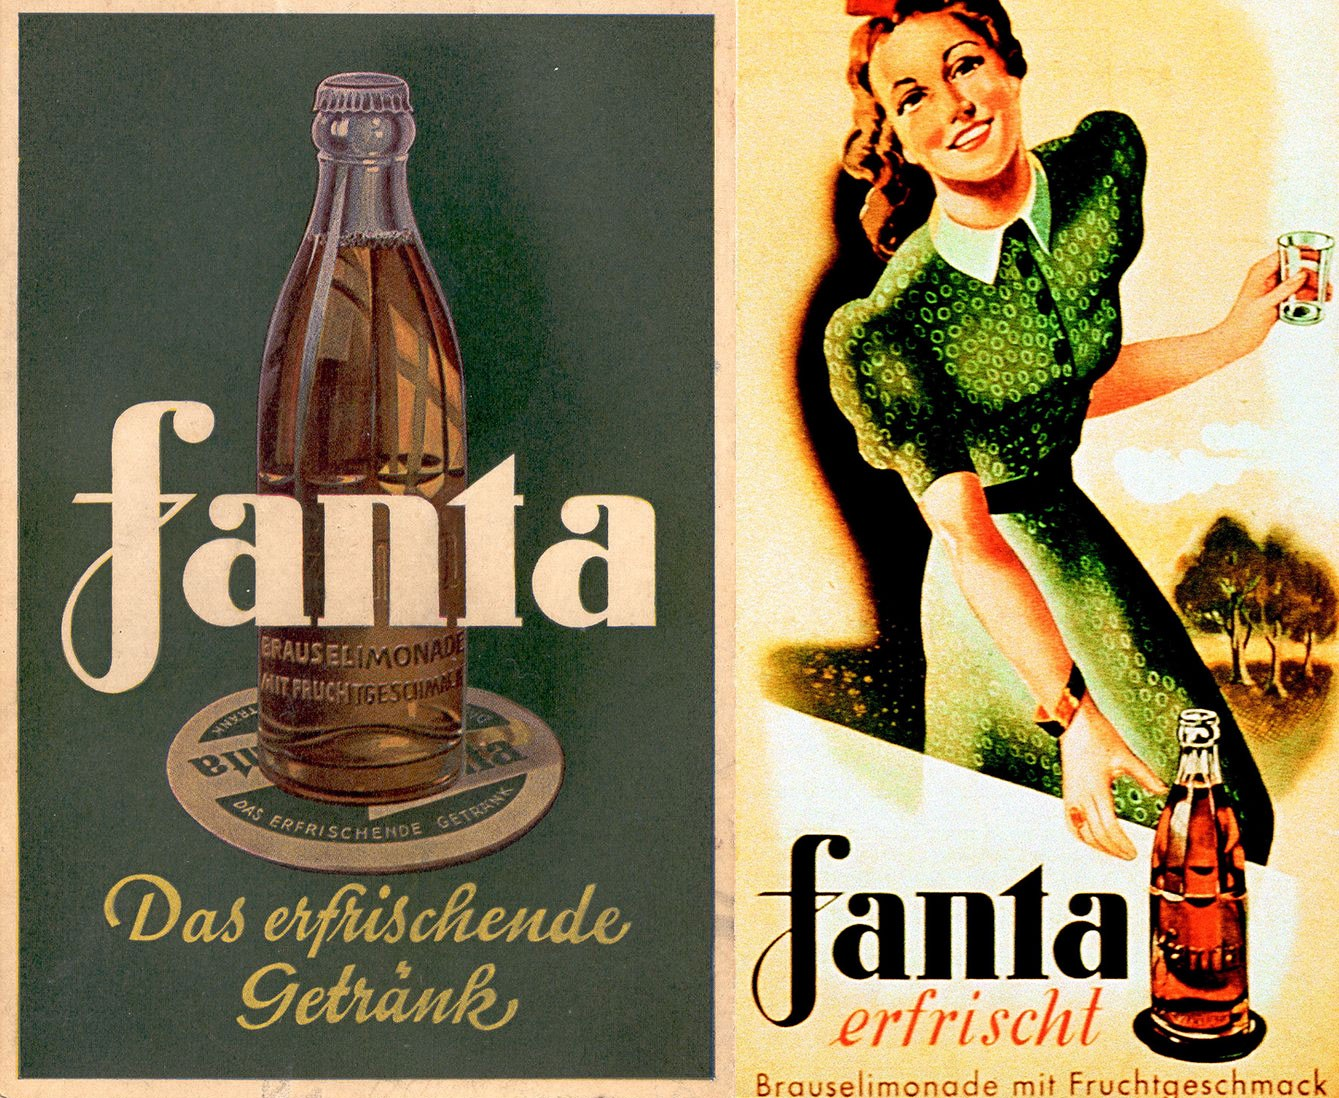 History of Fanta